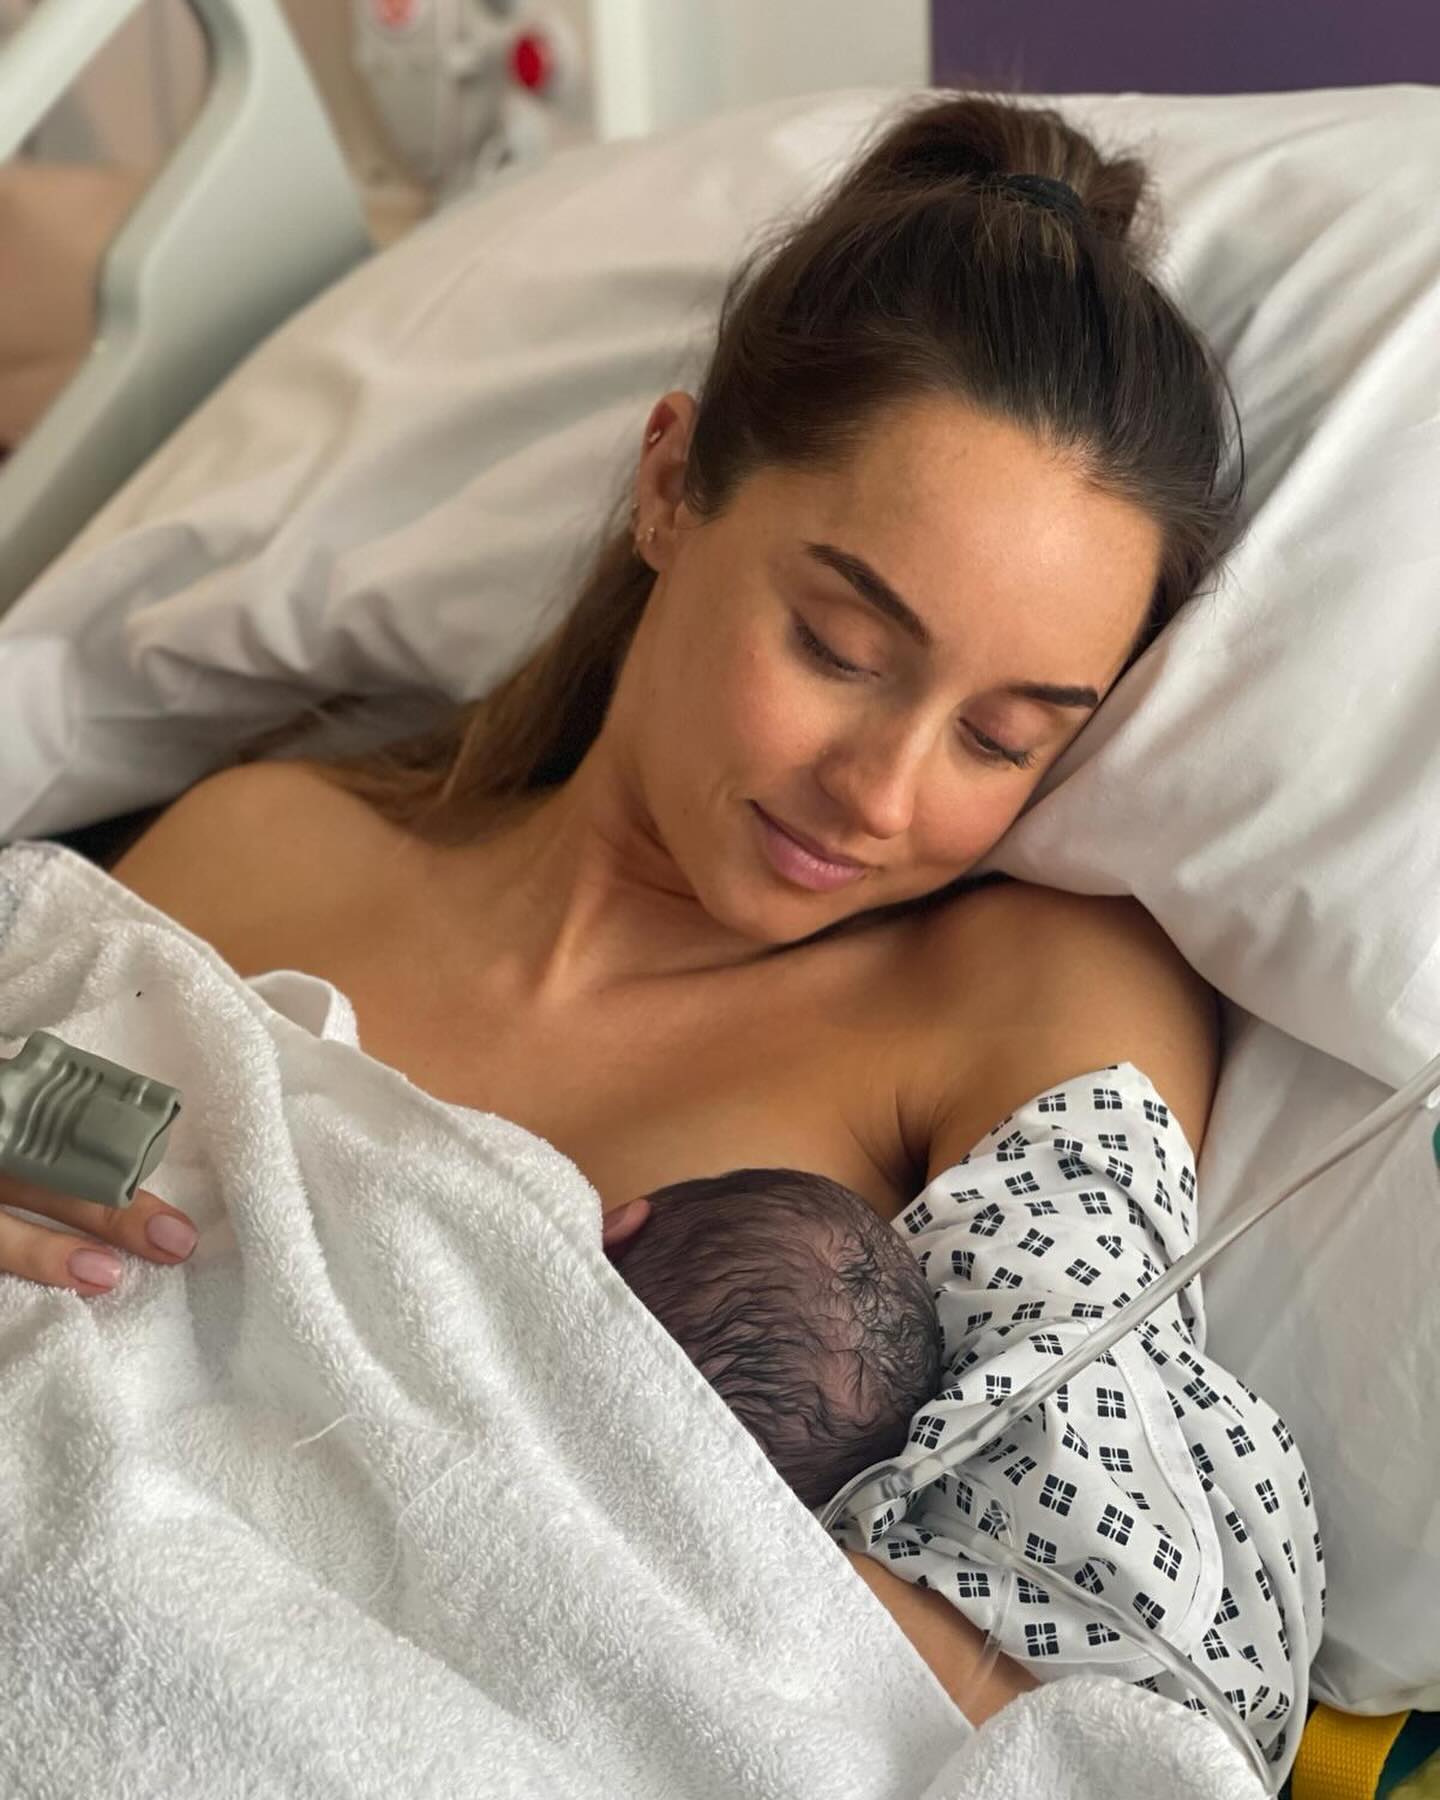 Dr. Emily mit ihrem neugeborenen Baby Arabella kurz nach ihrer Geburt